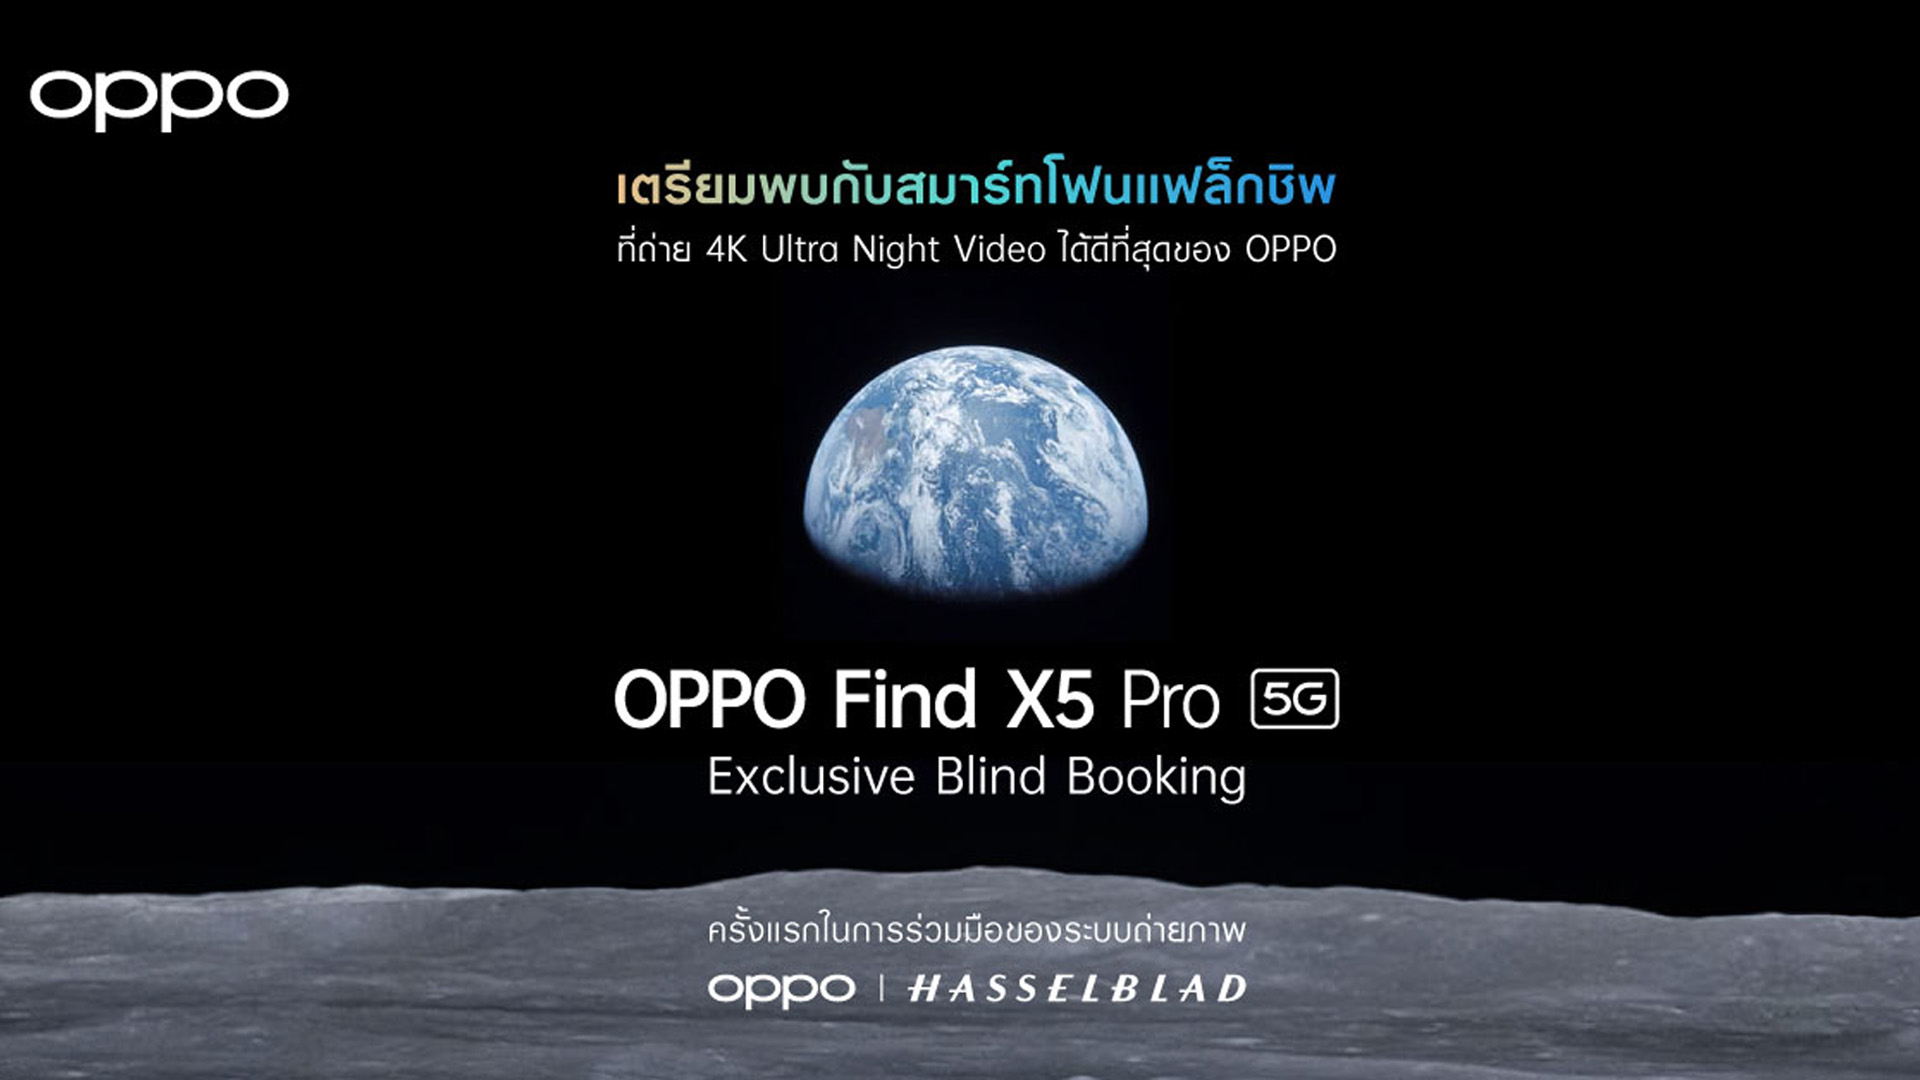 เปิดจอง OPPO Find X5 Pro 5G ใน Exclusive Blind Booking ตั้งแต่วันที่ 9 – 20 เมษายนนี้เท่านั้น!